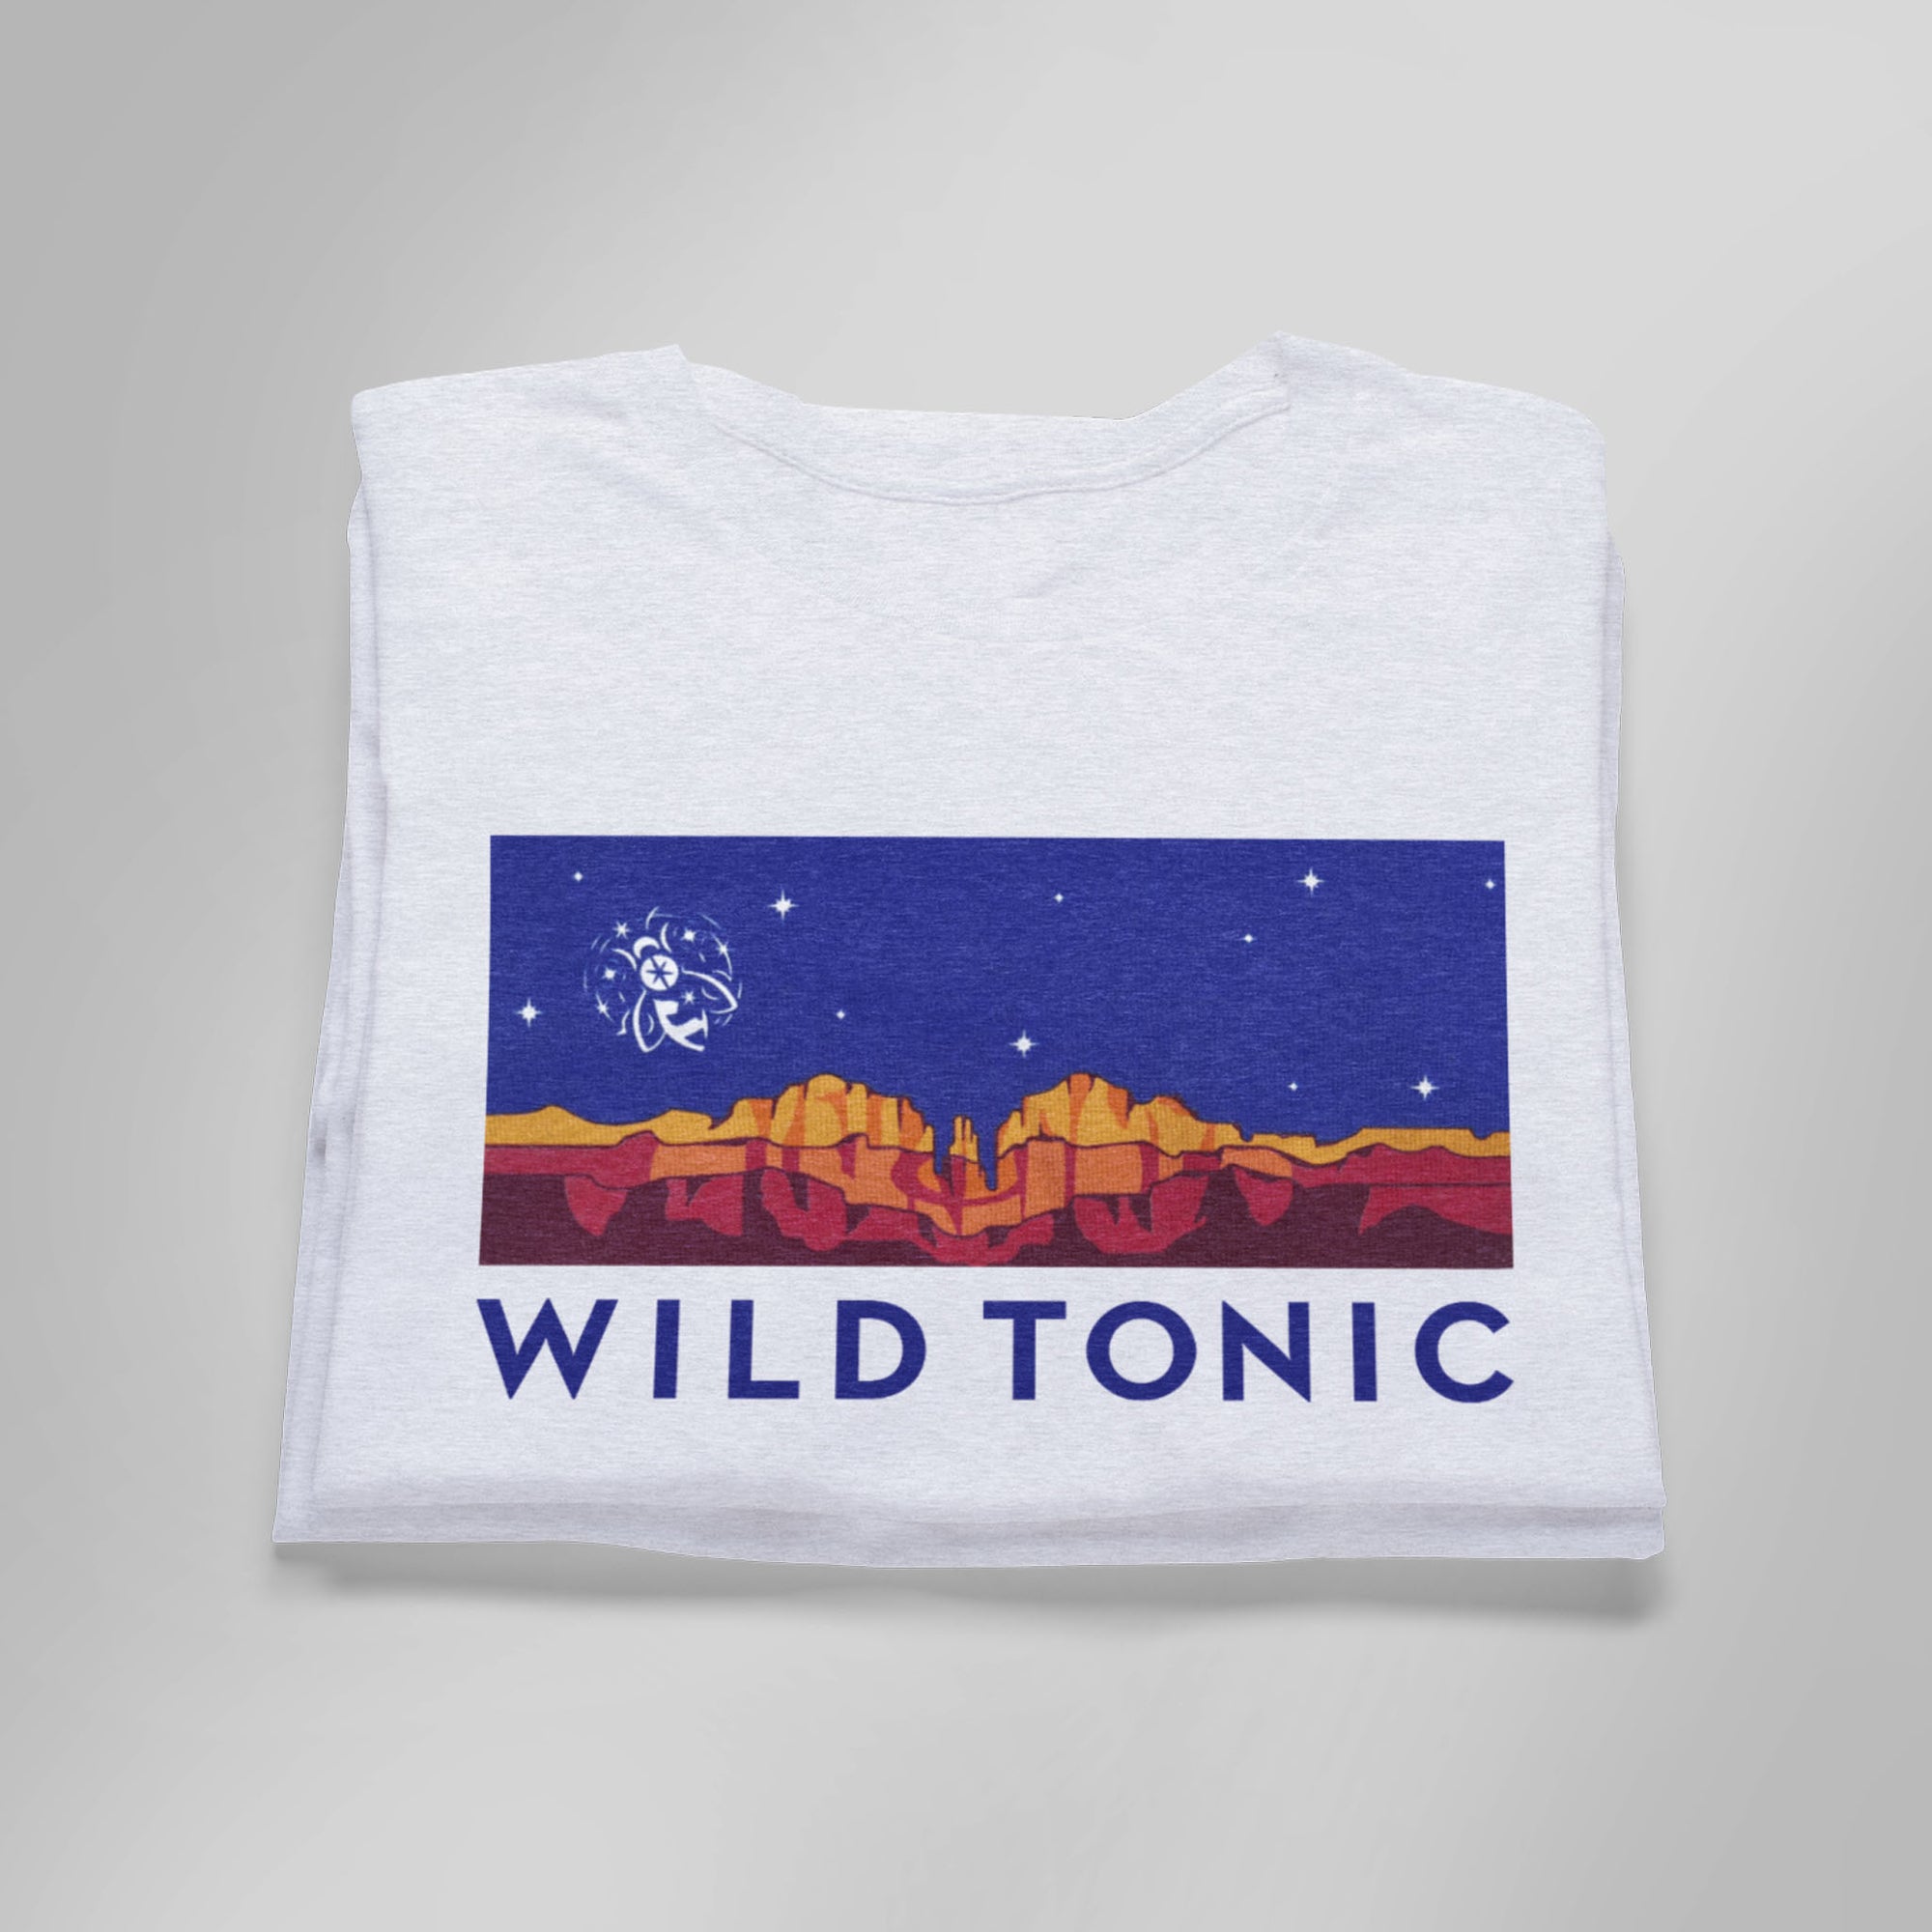 Wild Tonic White T-Shirt (with Sedona mountains)